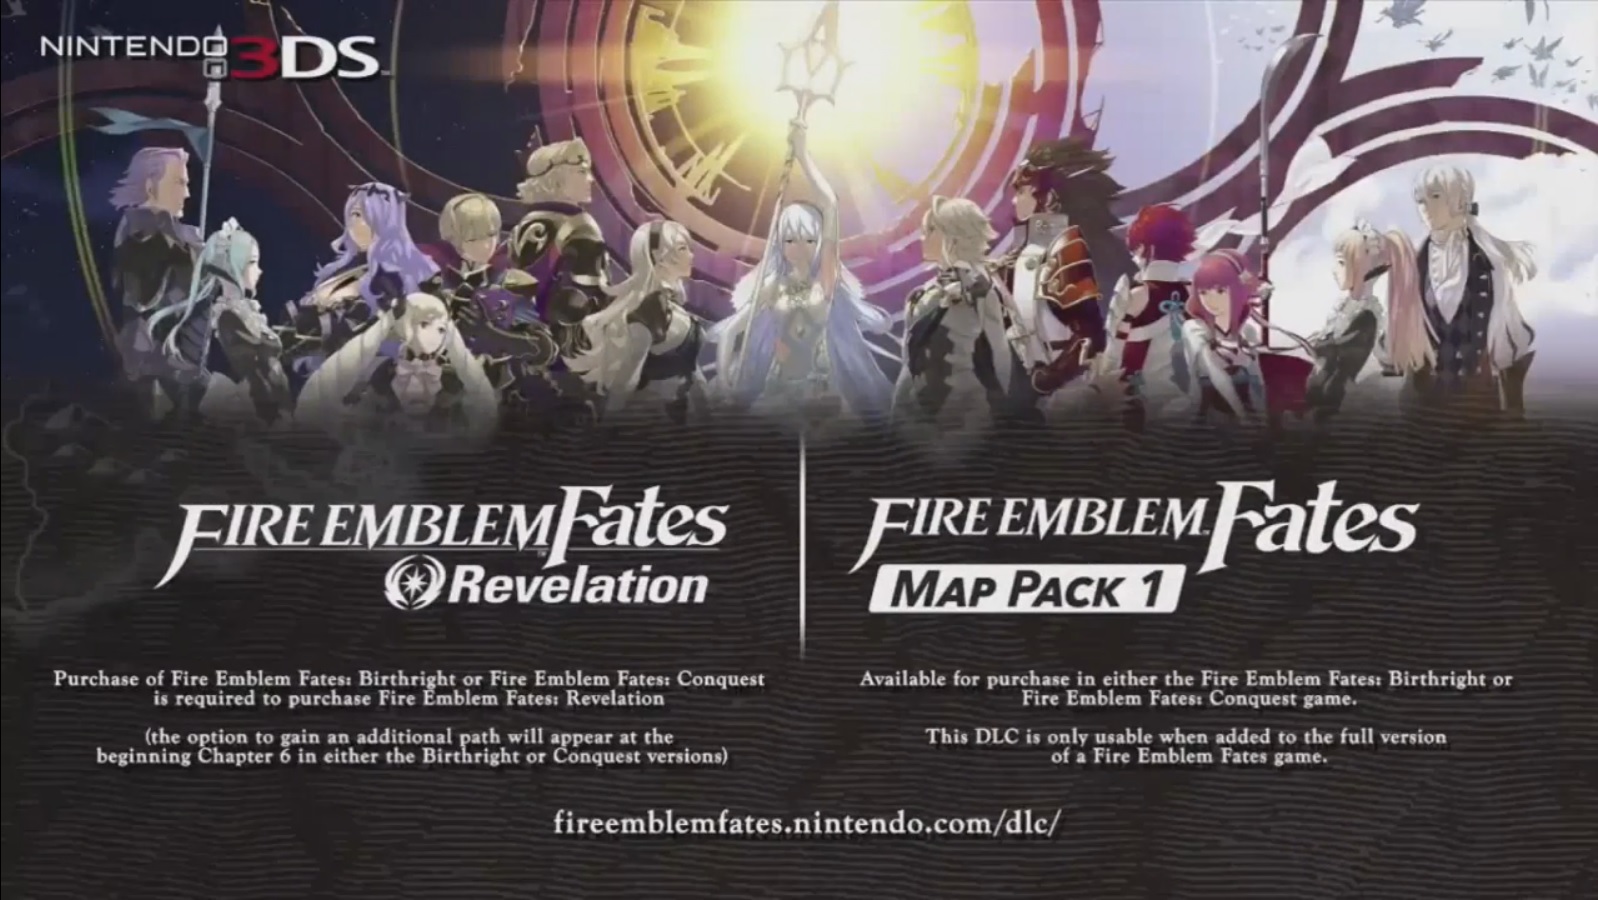 Fire Emblem Fates "Downloadable Content" trailer.